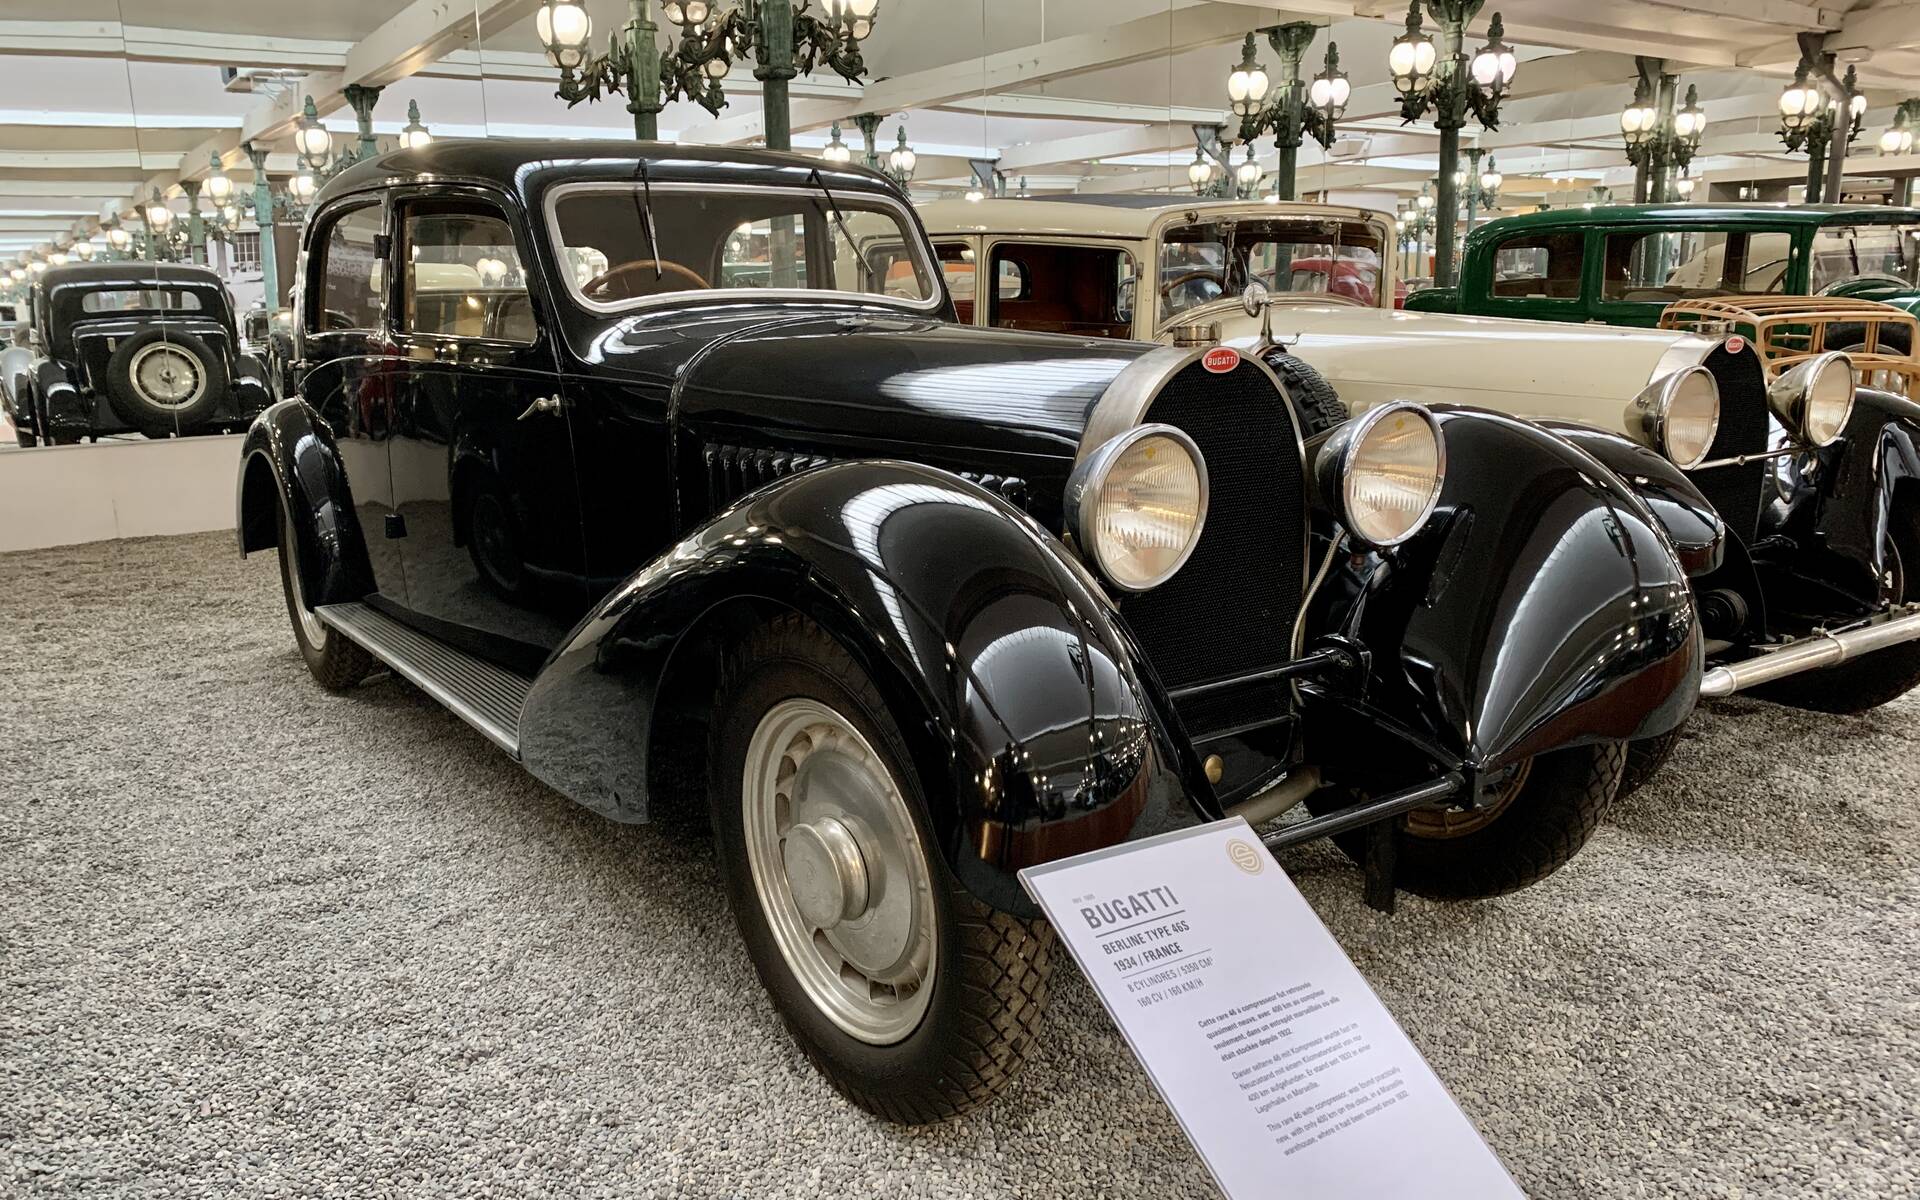 En photos : une centaine de Bugatti réunies dans un même musée 503060-en-photos-des-dizaines-de-bugatti-reunies-dans-un-meme-musee